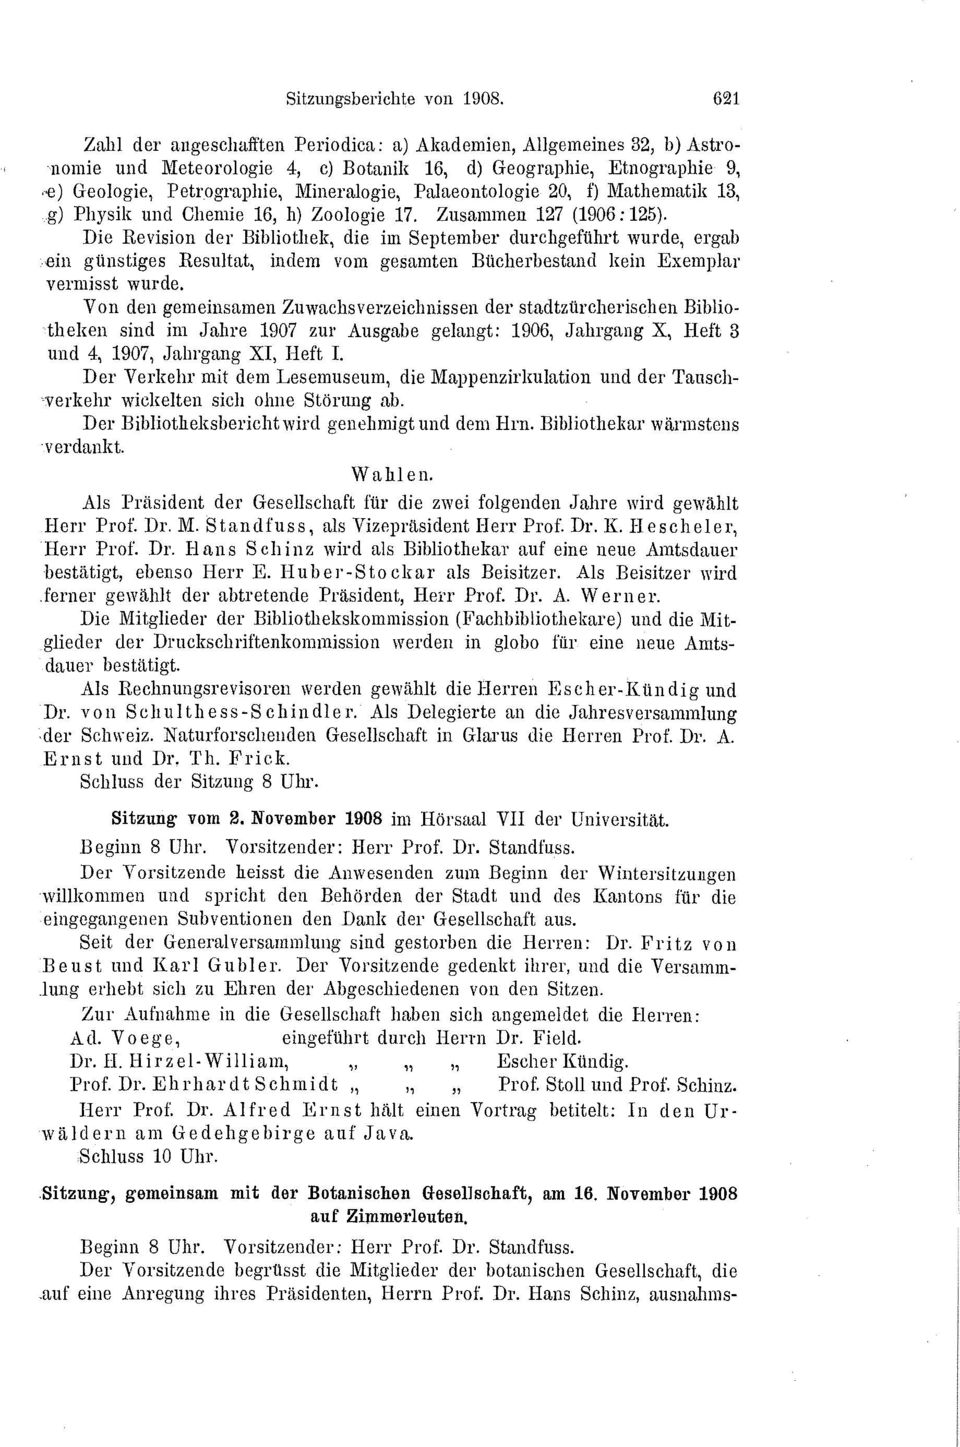 Palaeontologie 20, f) Mathematik 13,.g) Physik und Chemie 16, h) Zoologie 17. Zusammen 127 (1906:125).